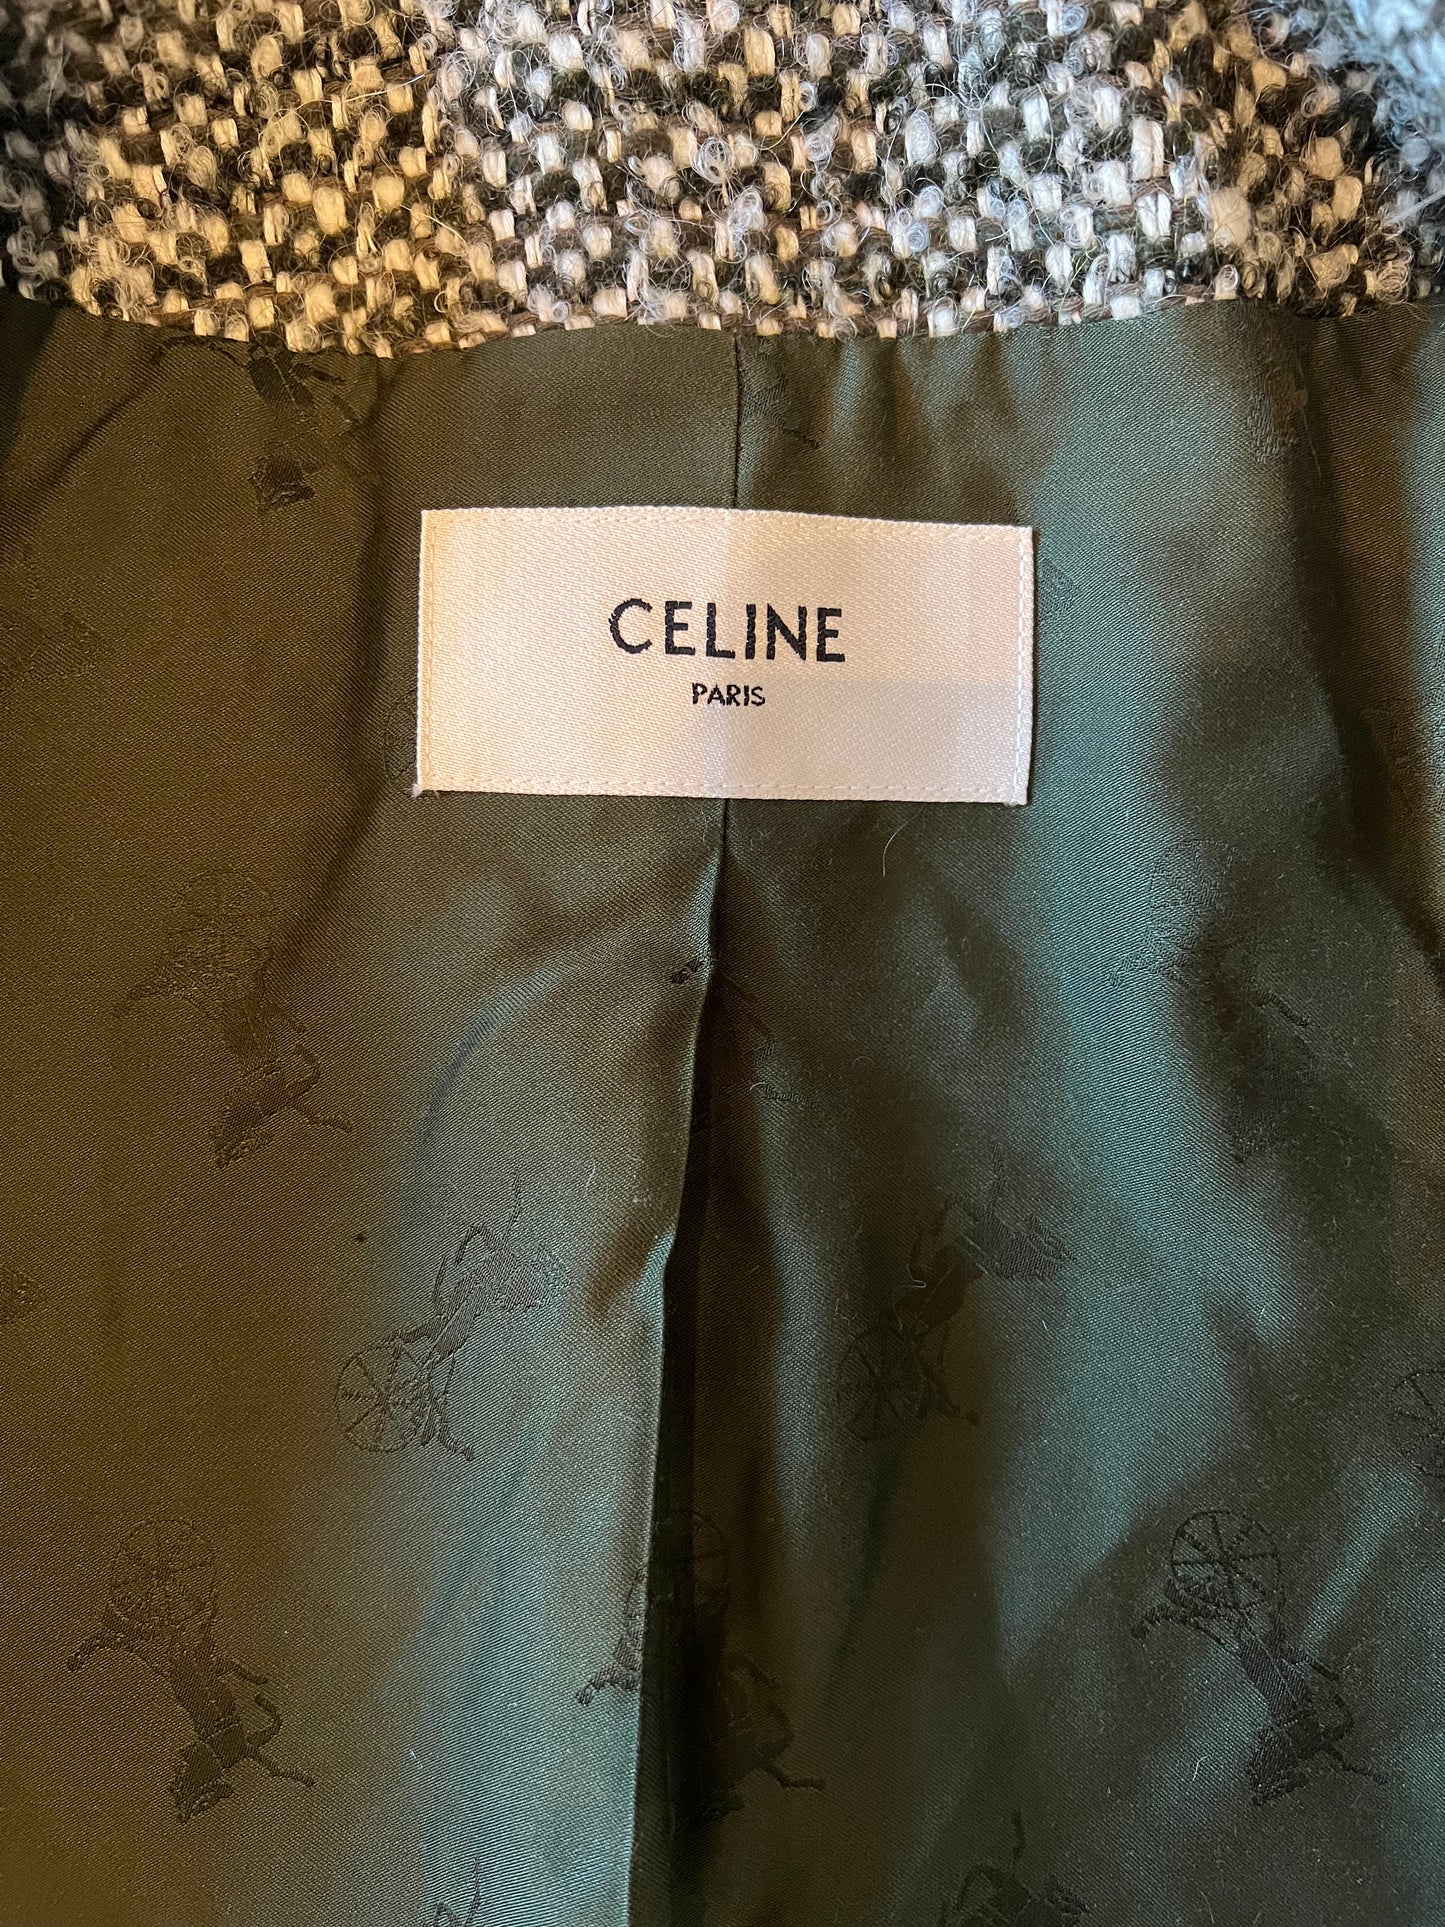 Celine Olive Tweed Size 38 Chausser Jacket